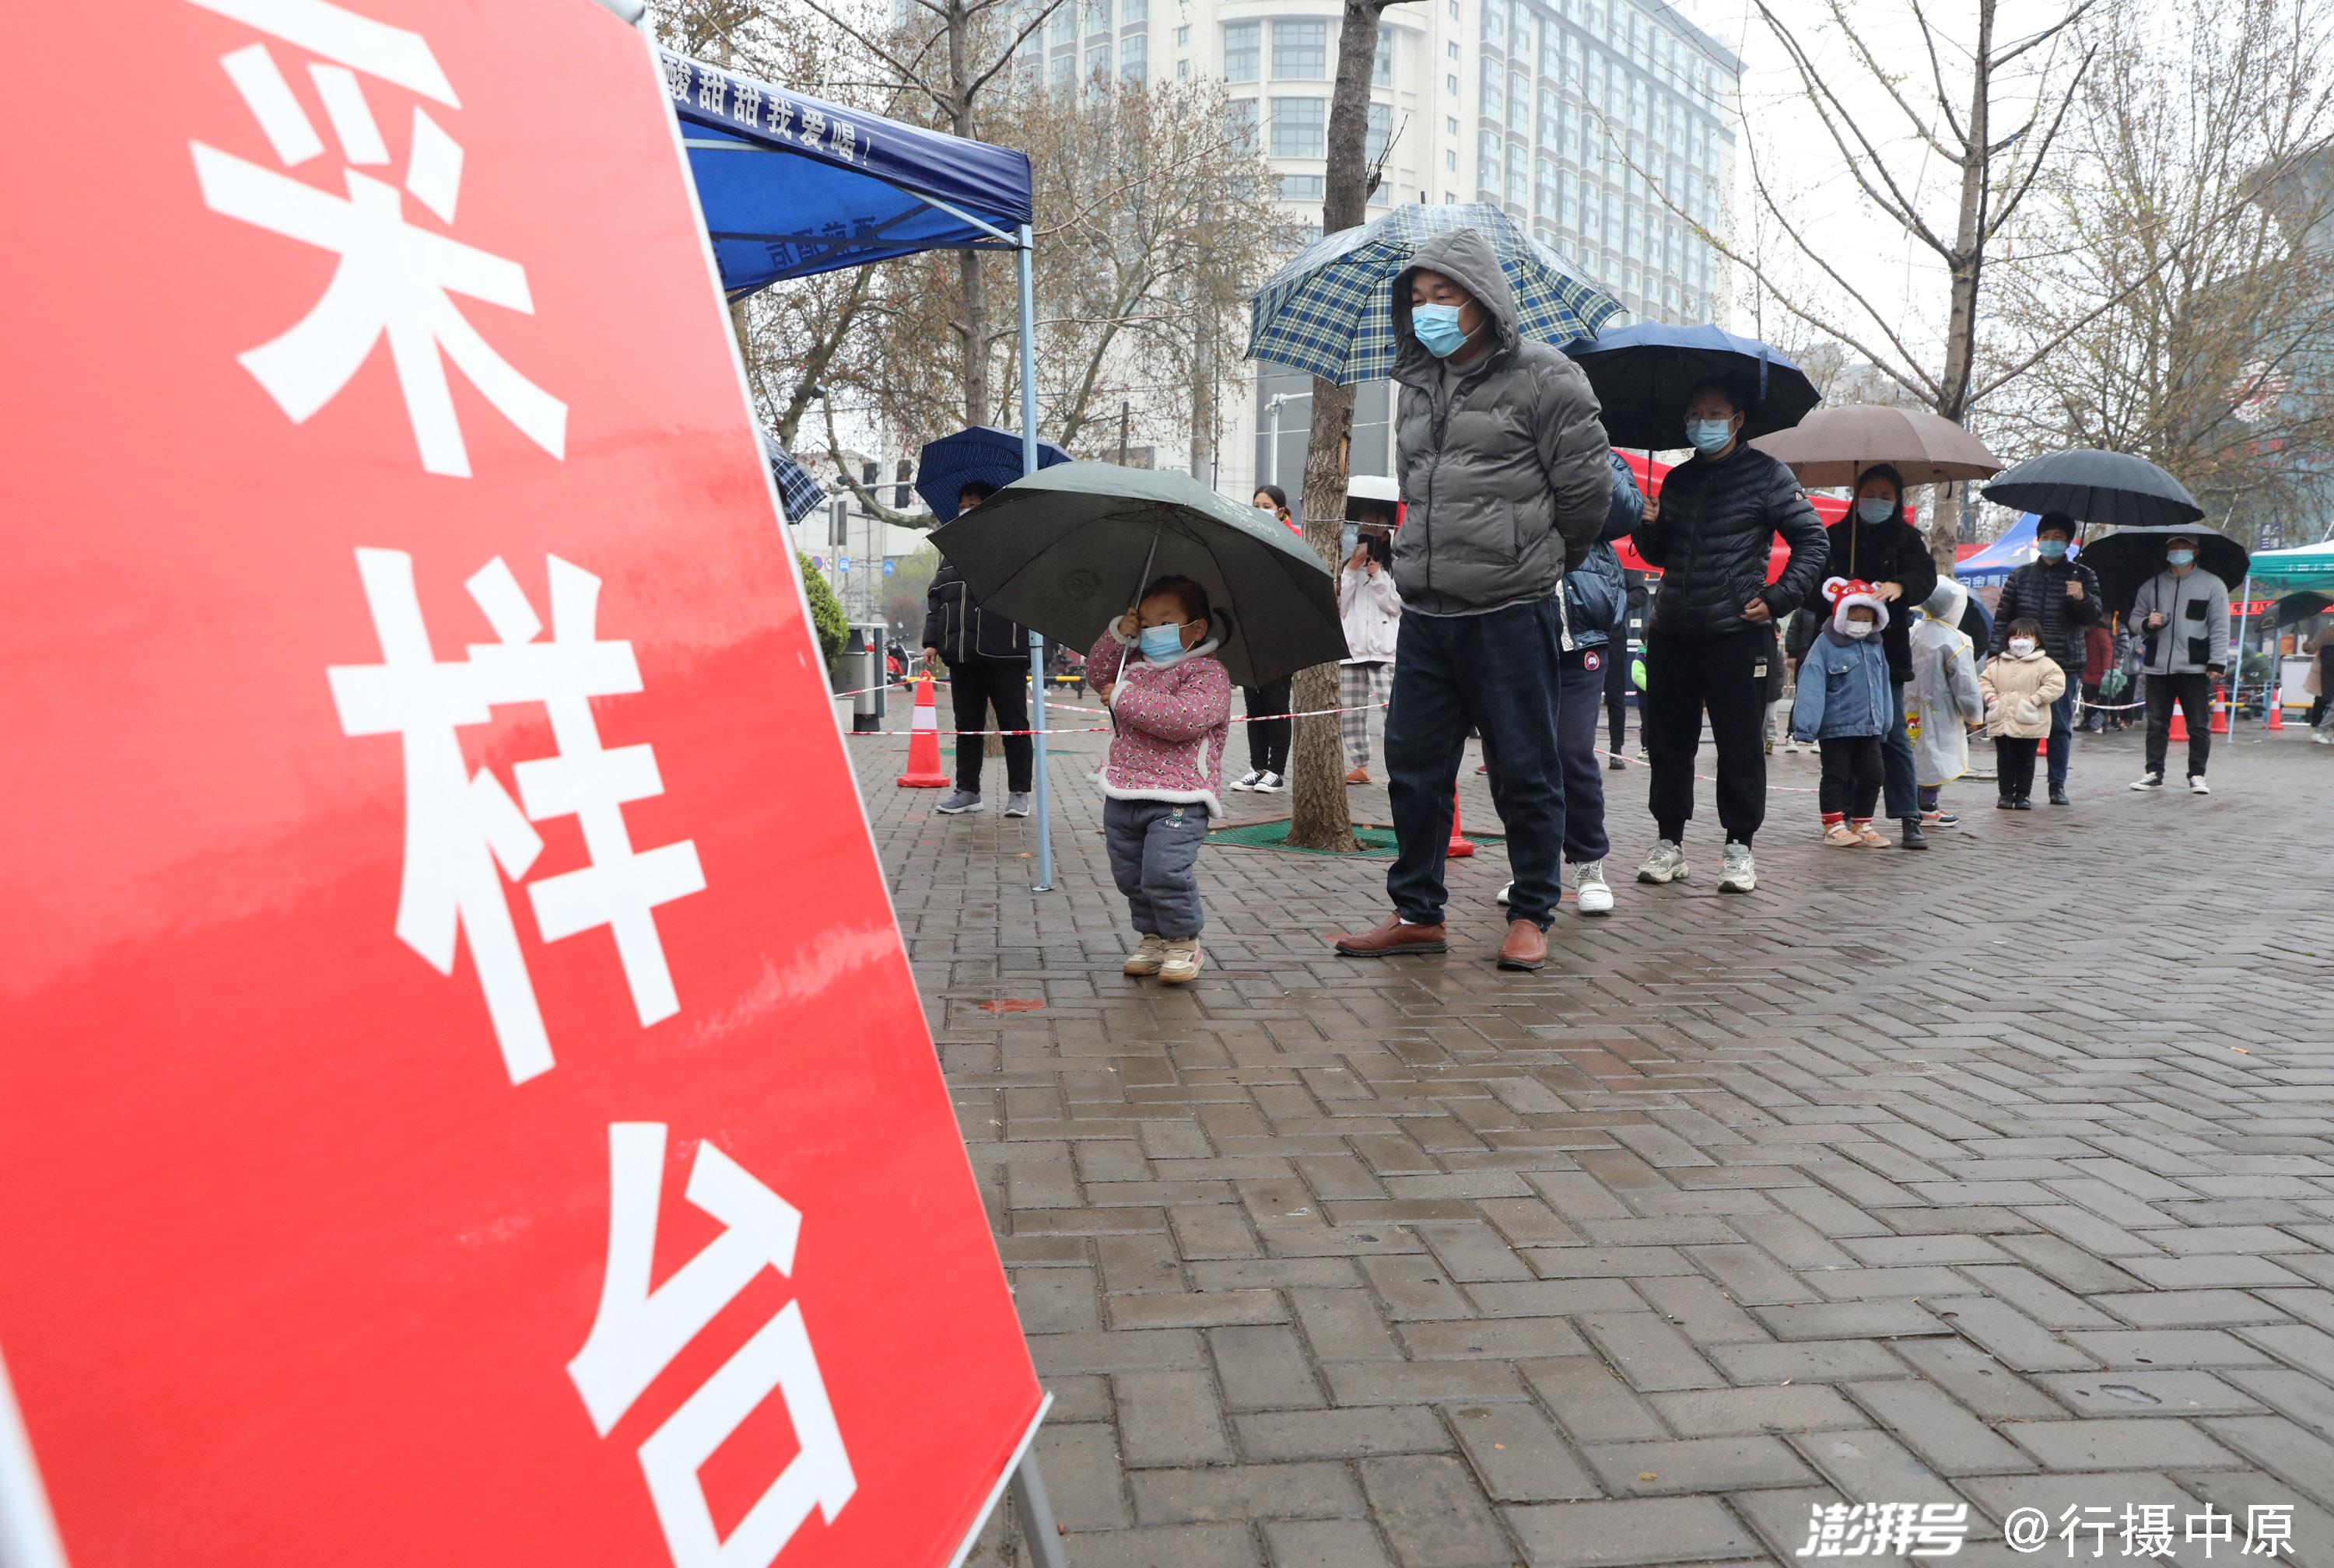 3月25日,居民在河南省焦作市温县一处核酸检测点排队准备接受核酸采样